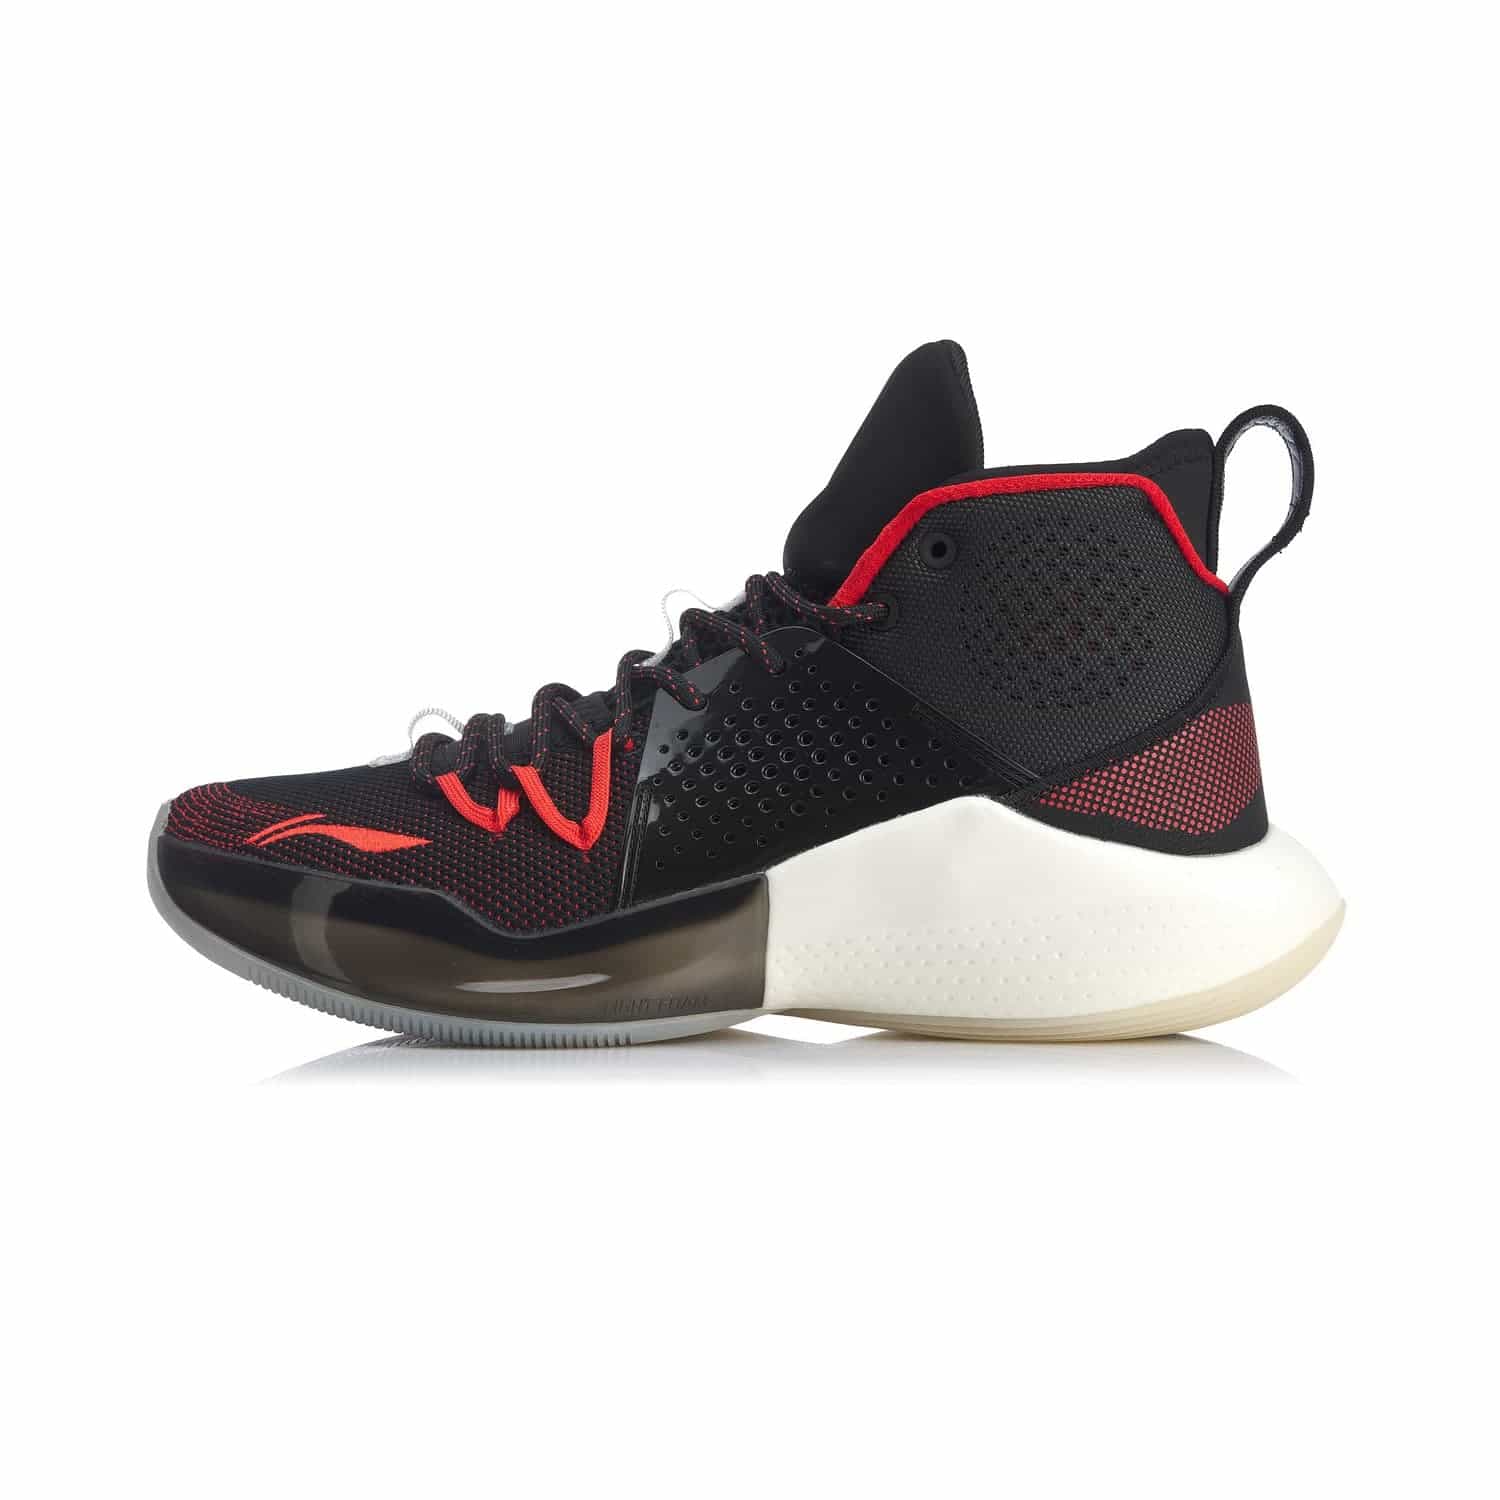 音速 VIII 實戰籃球鞋 - 標準黑焰紅